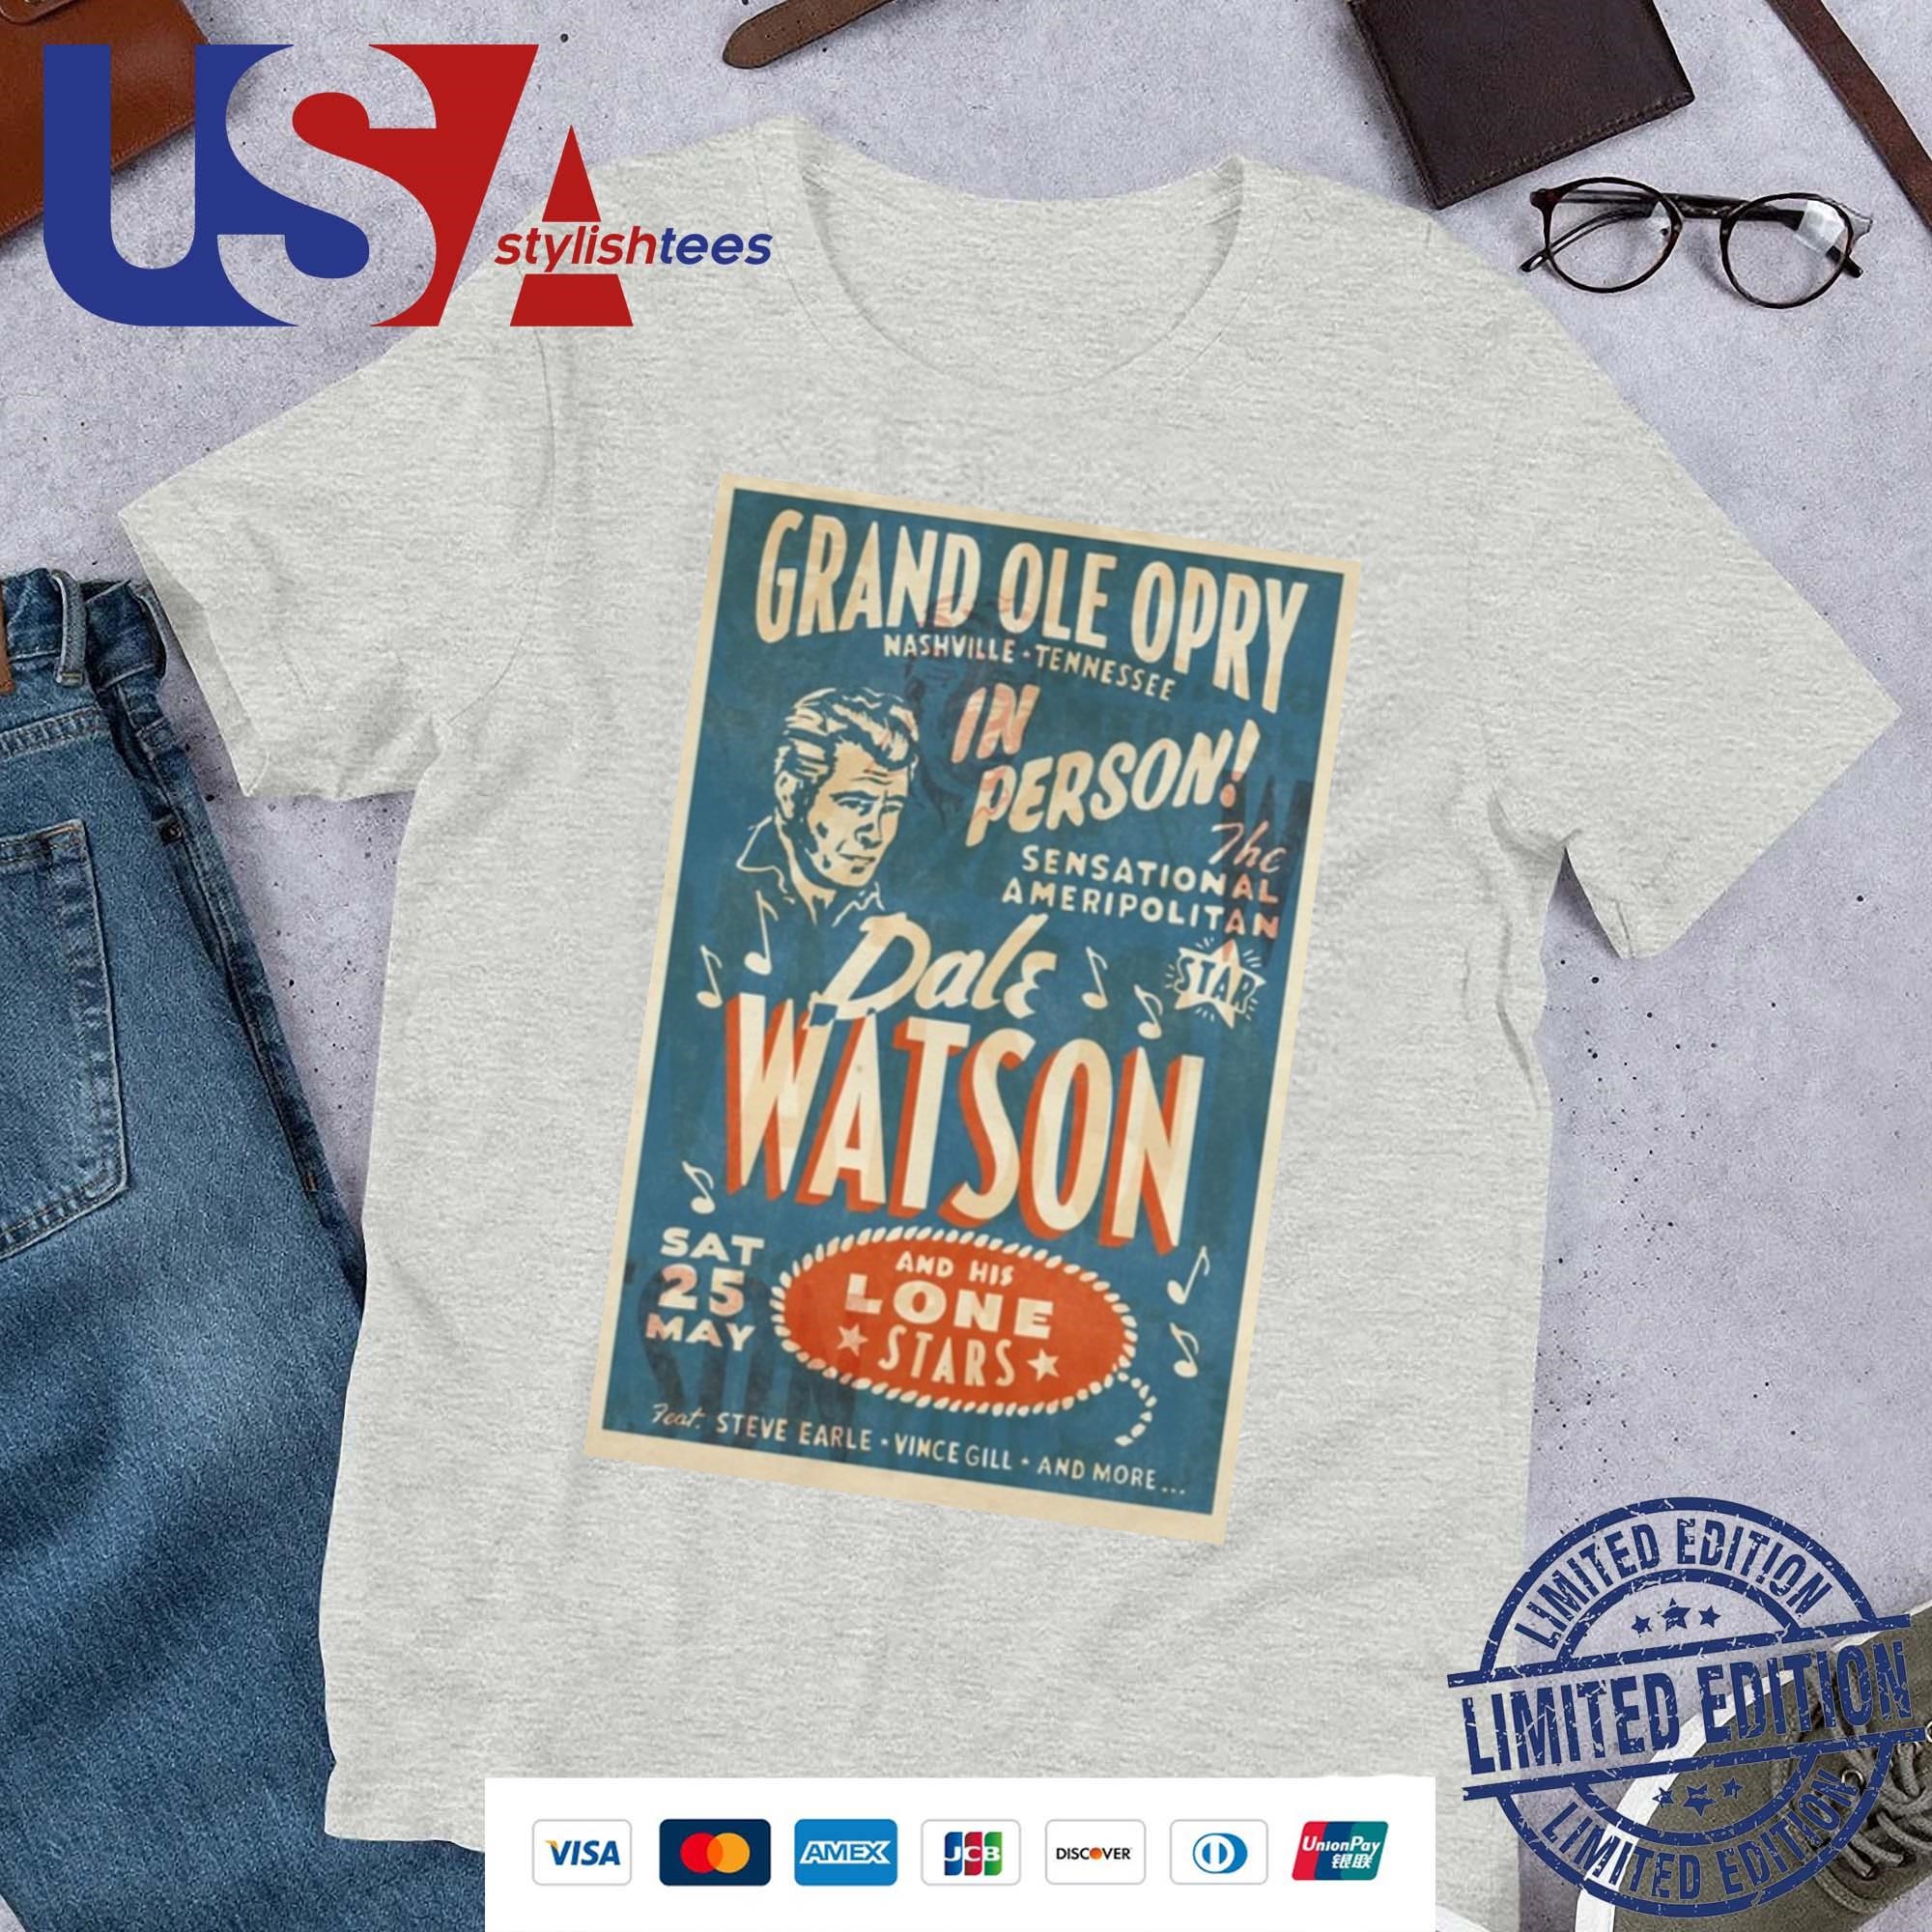 Grand Ole Opry Dale Watson, Nashville, TN May 25, 2024 Poster Shirt